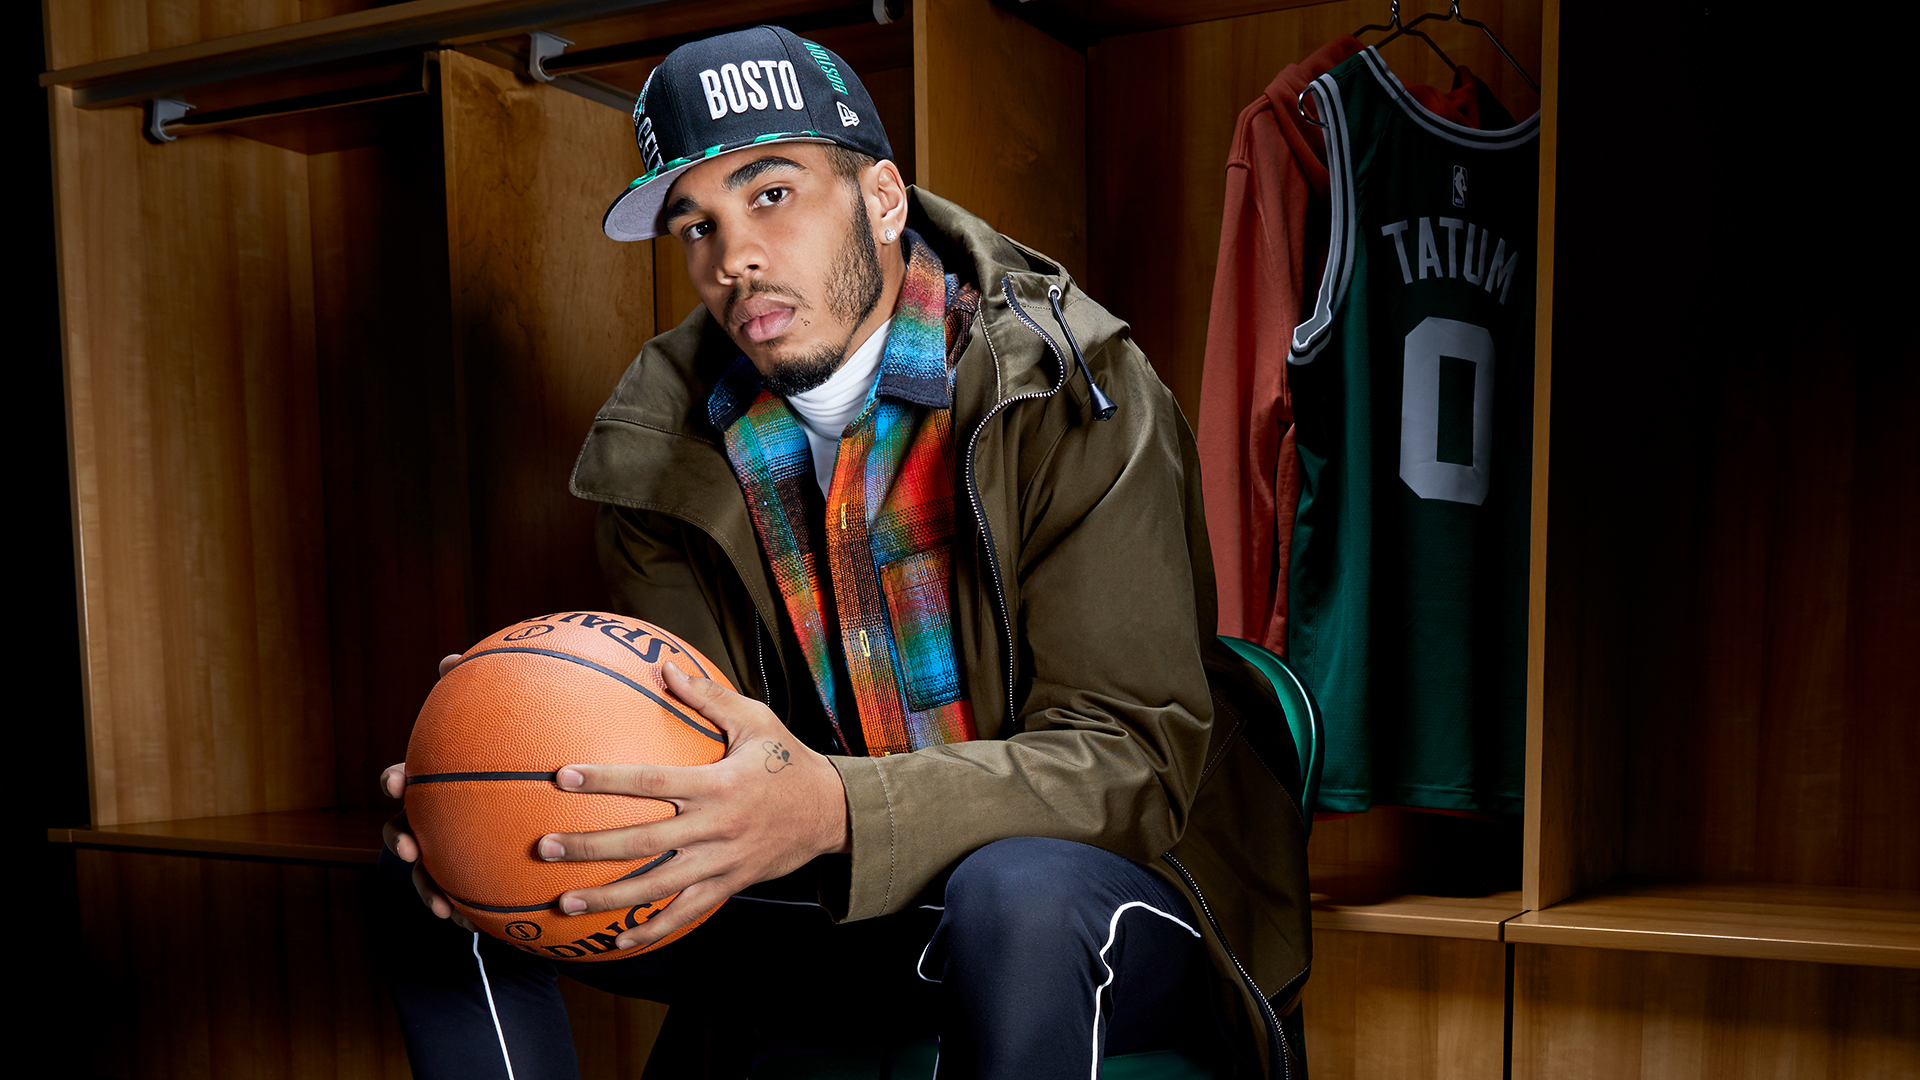 Brooklyn Nets Guard Wears Nike Kobe 6 'Grinch' - Sports